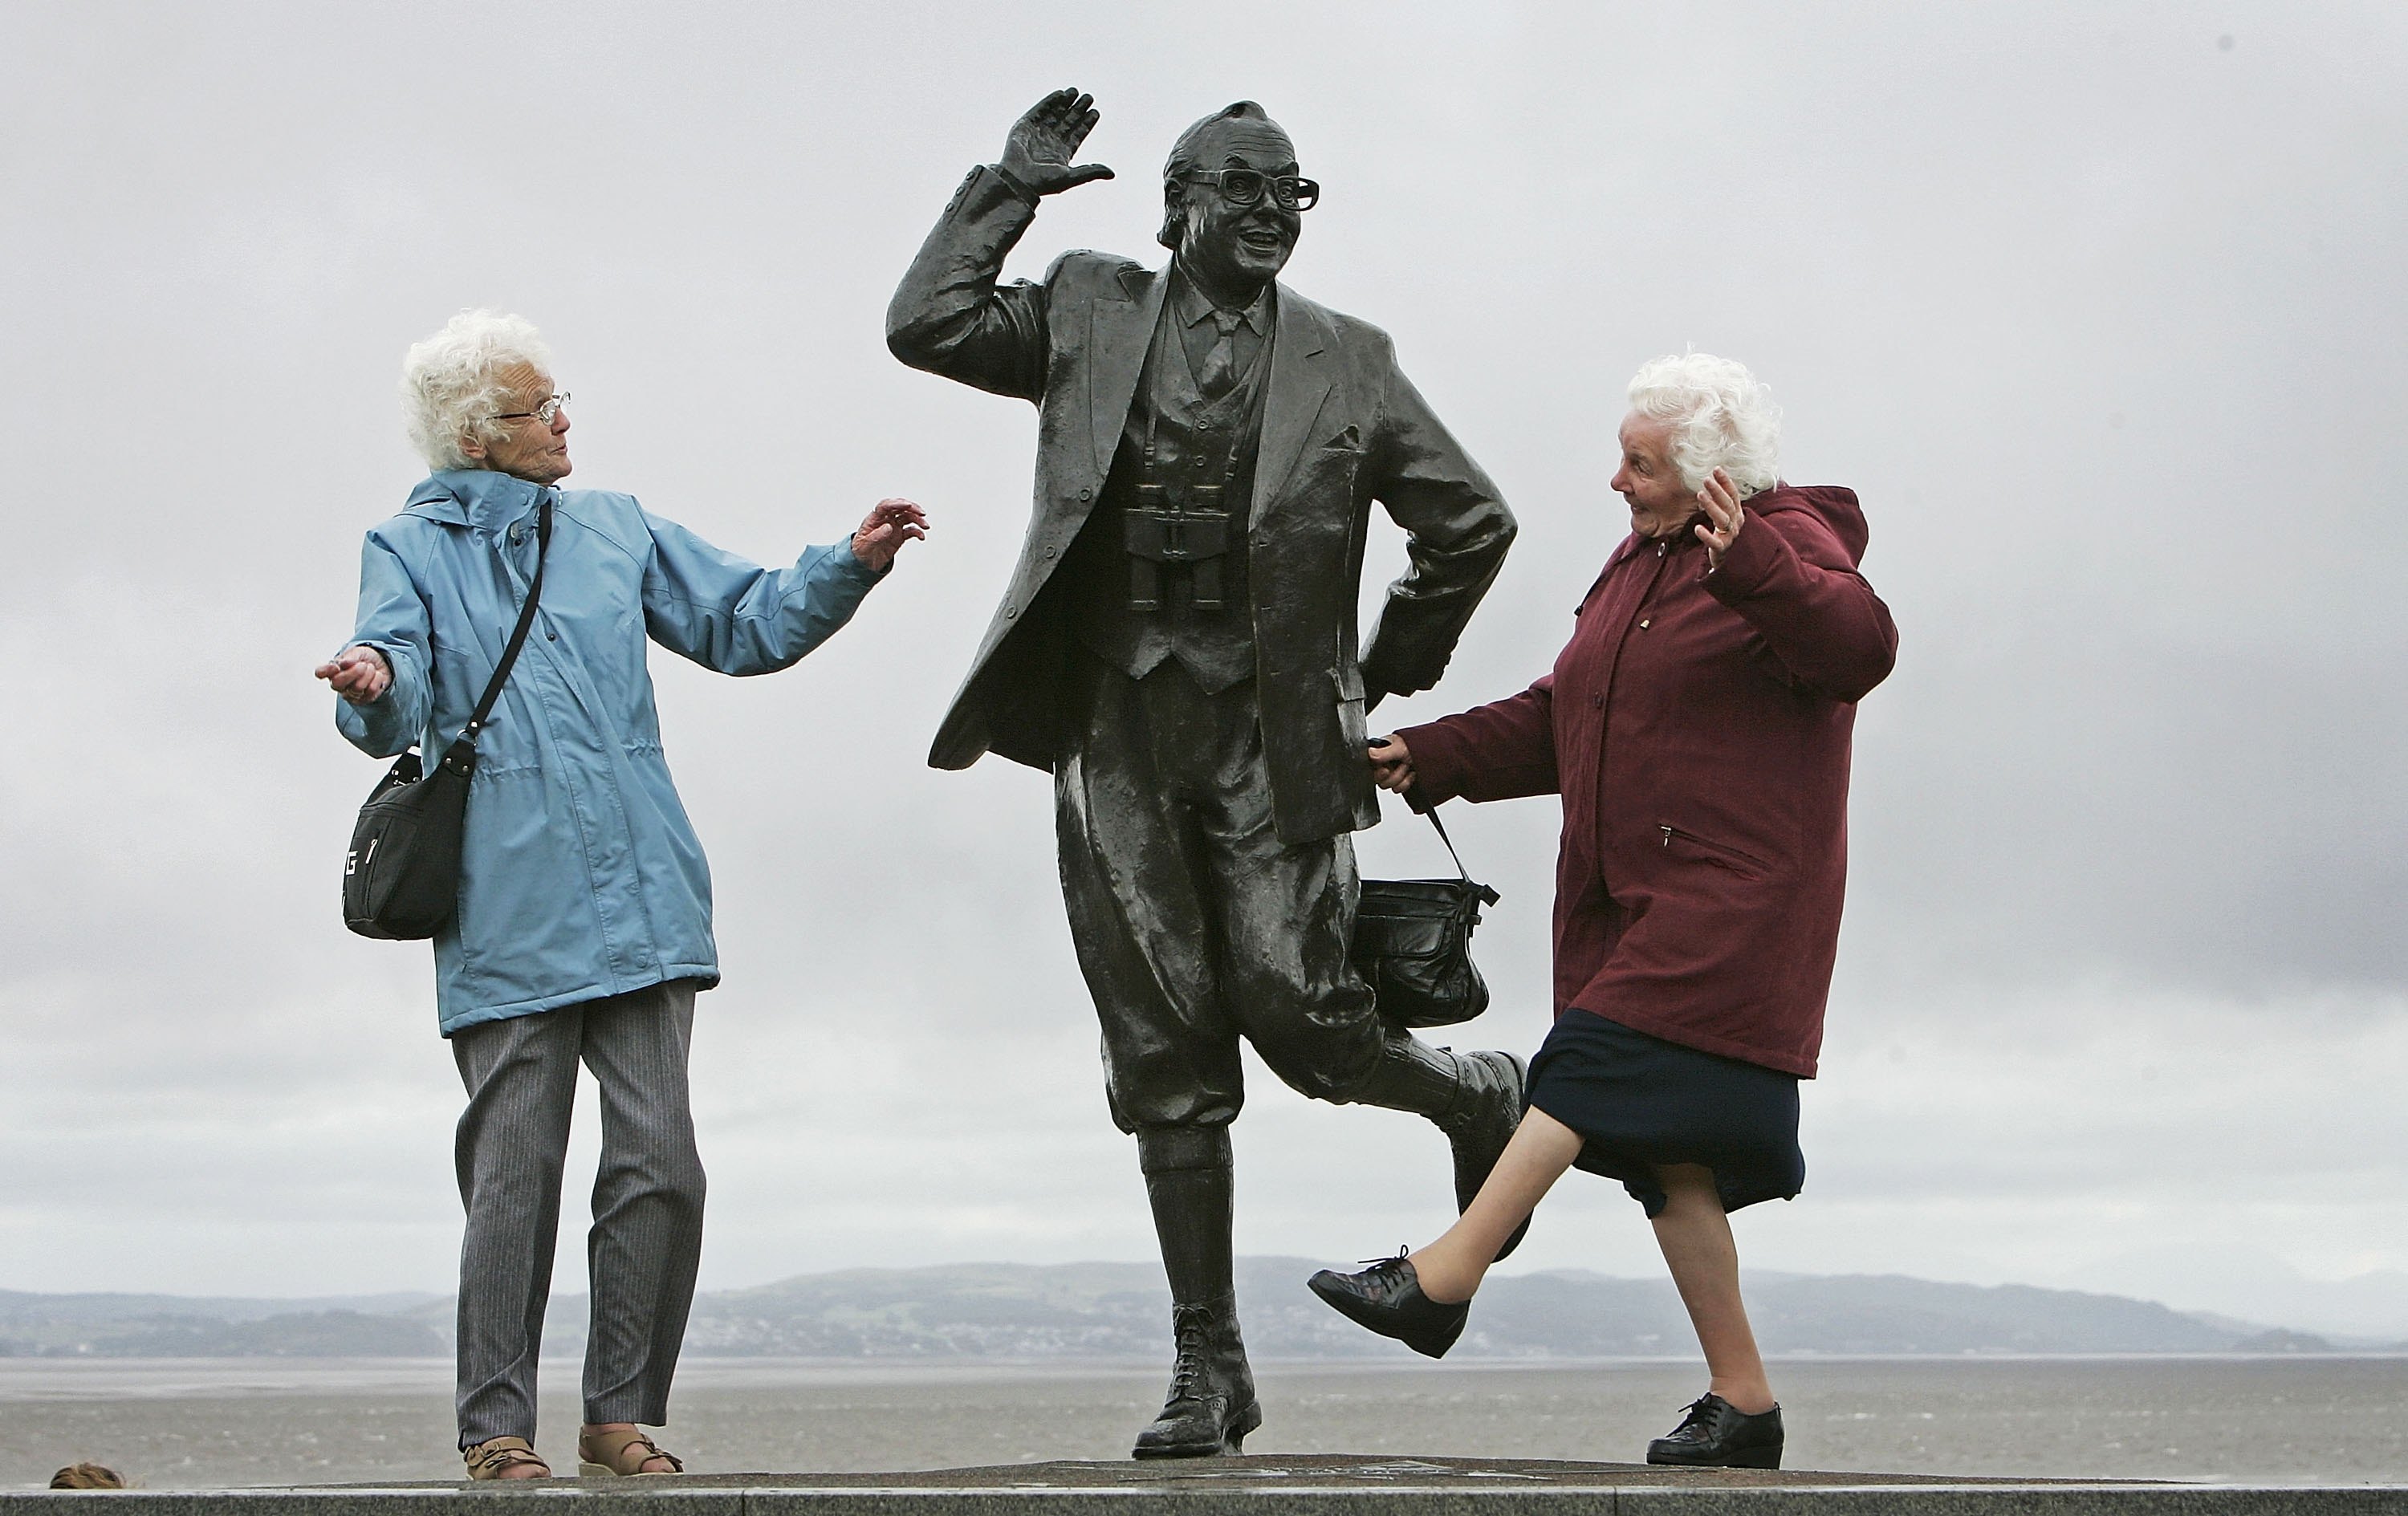 Bất chấp thời tiết khắc nghiệt, những người hưu trí vẫn nở một nụ cười hạnh phúc khi họ biểu diễn điệu nhảy nổi tiếng của Anh. (Hình ảnh mang tính minh hoạ). (Ảnh Christopher Furlong / Getty Images)